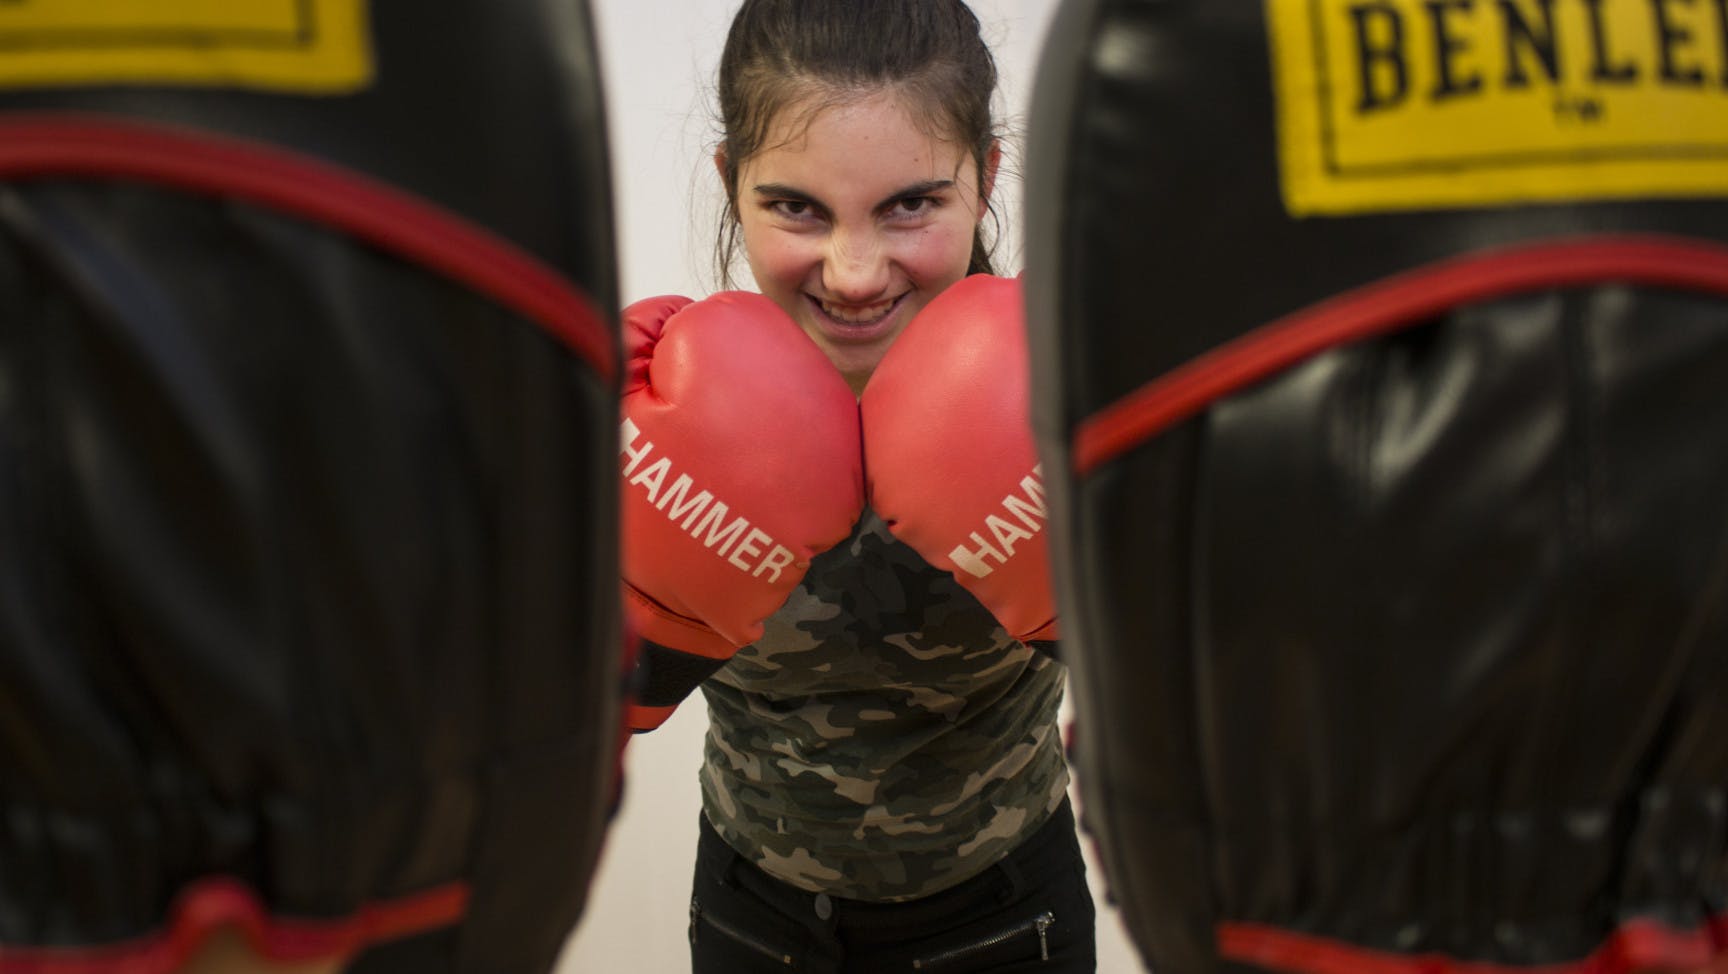 Zwischen zwei Kampfpratzen sieht man den Oberkörper einer weiblich gelesenen Person, die Boxhandschuhe trägt und sich diese in Kinnhöhe vors Gesicht hält.